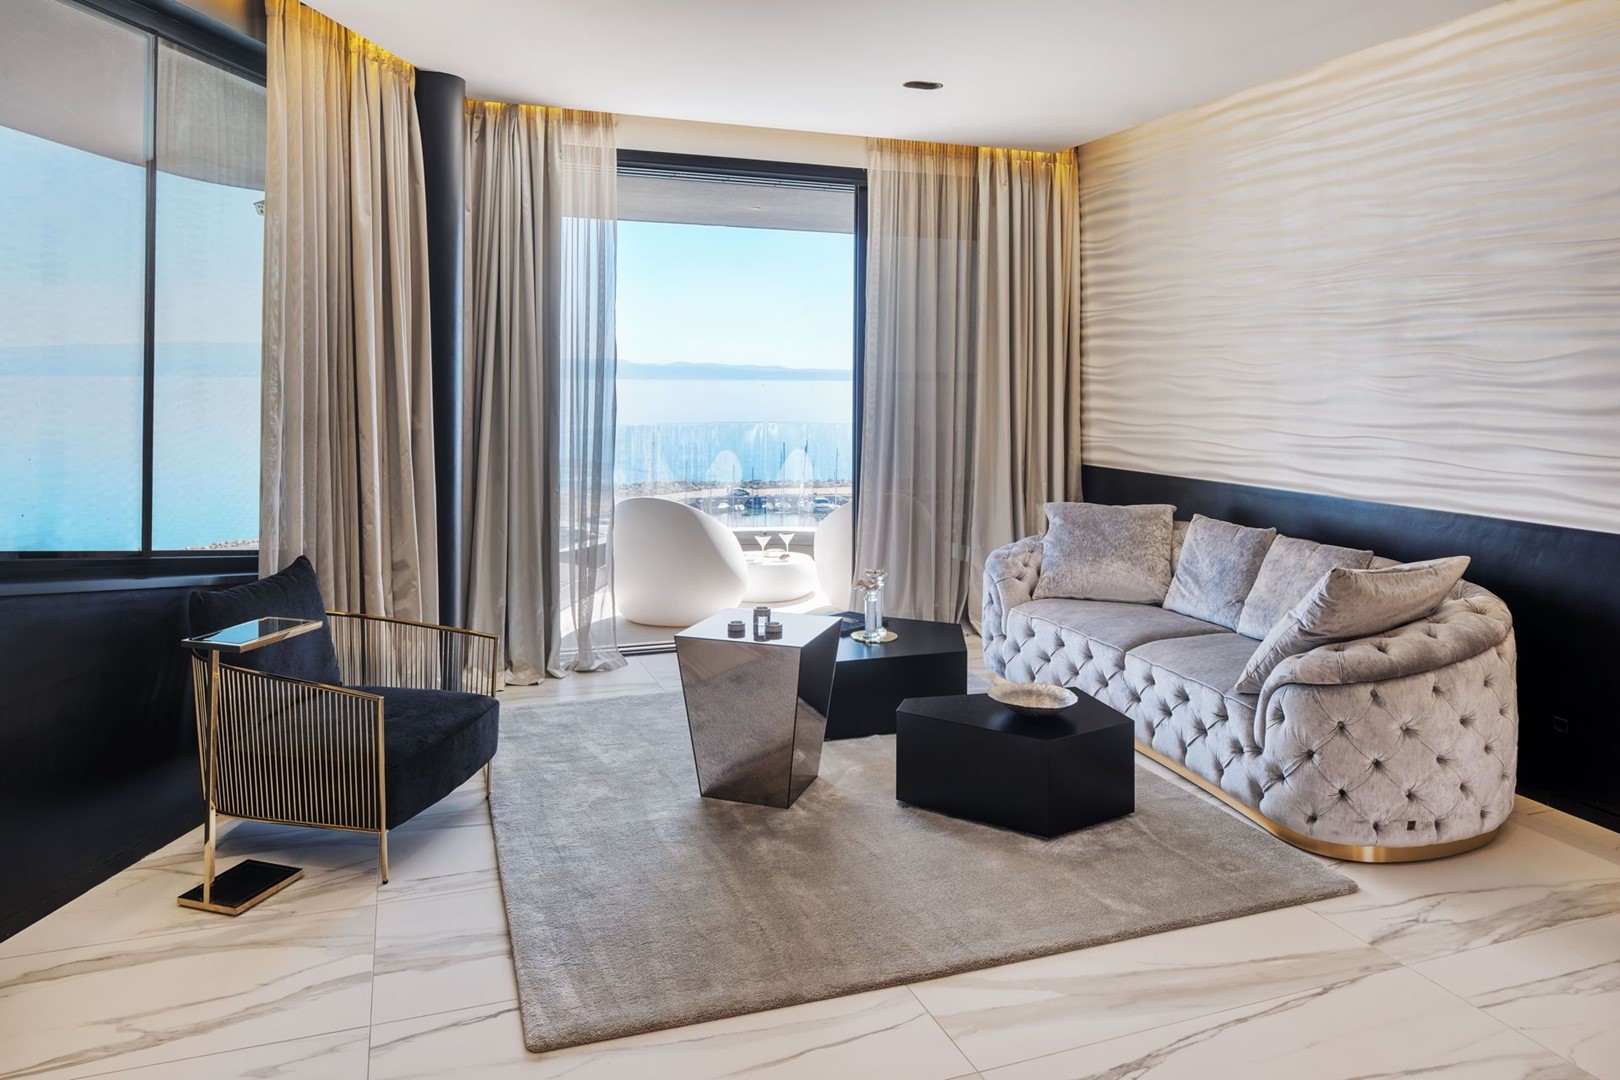 Glamurozno uređen dnevni boravak sa sivom komfornom sofom foteljom stolićem i pogledom na lučicu u luksuznom apartmanu za najam u Splitu